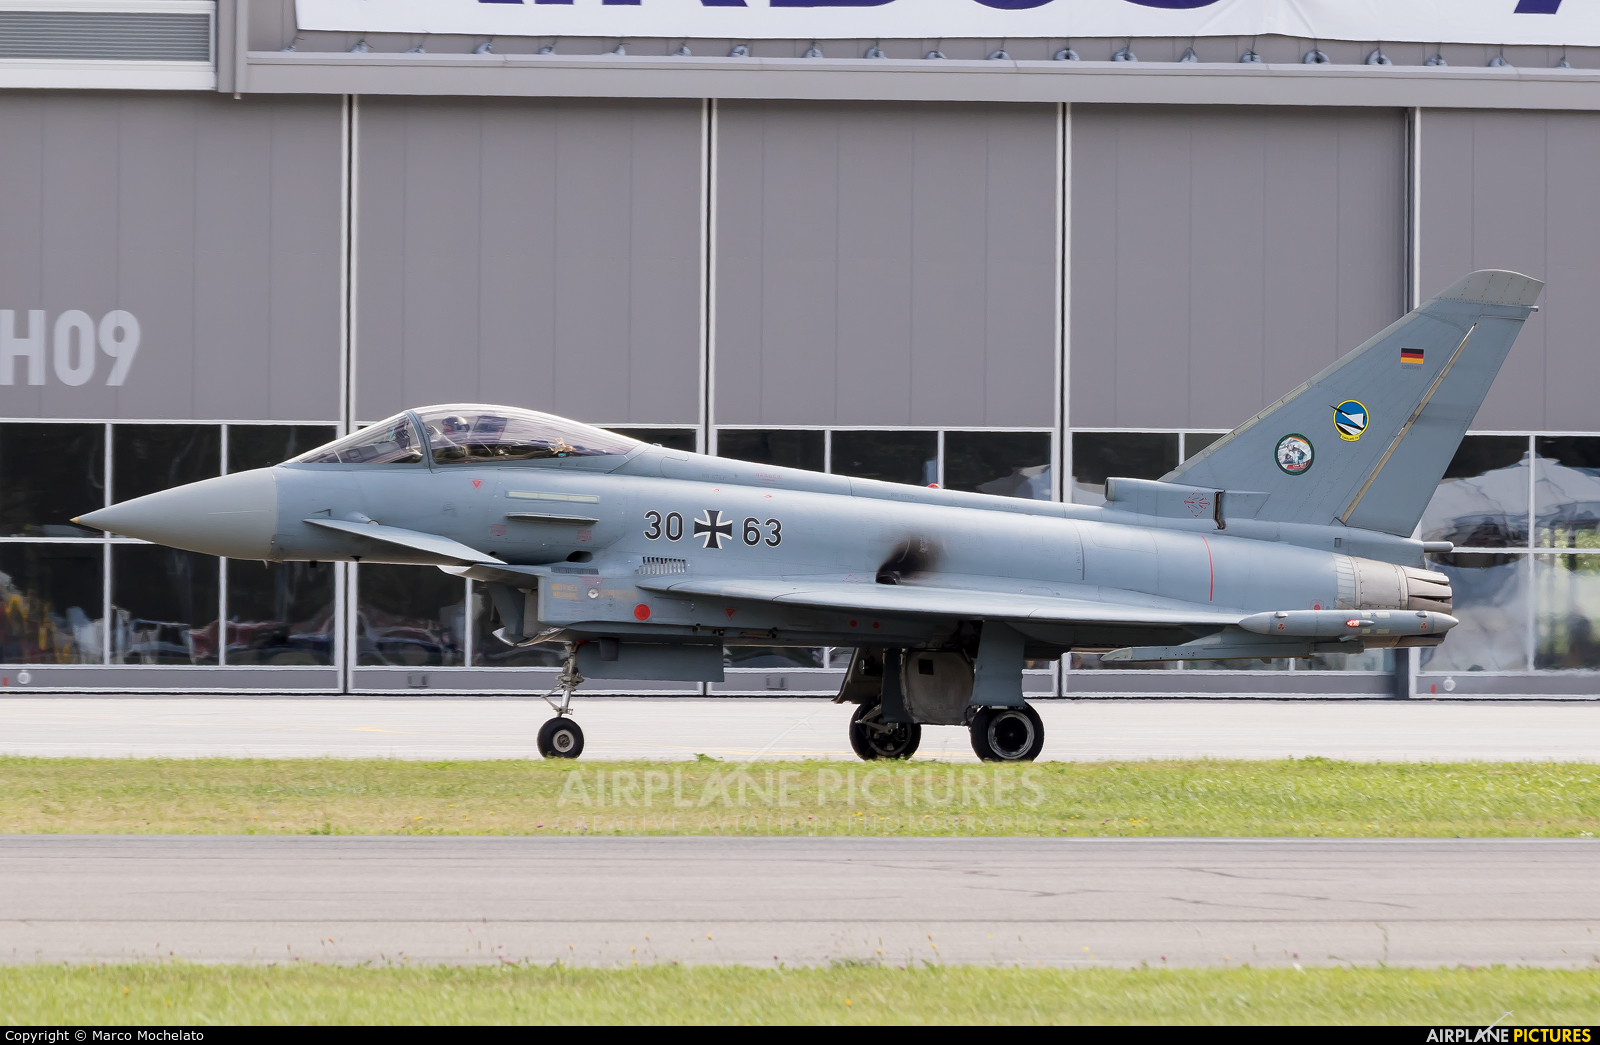 Germany - Air Force 30+63 aircraft at Sion